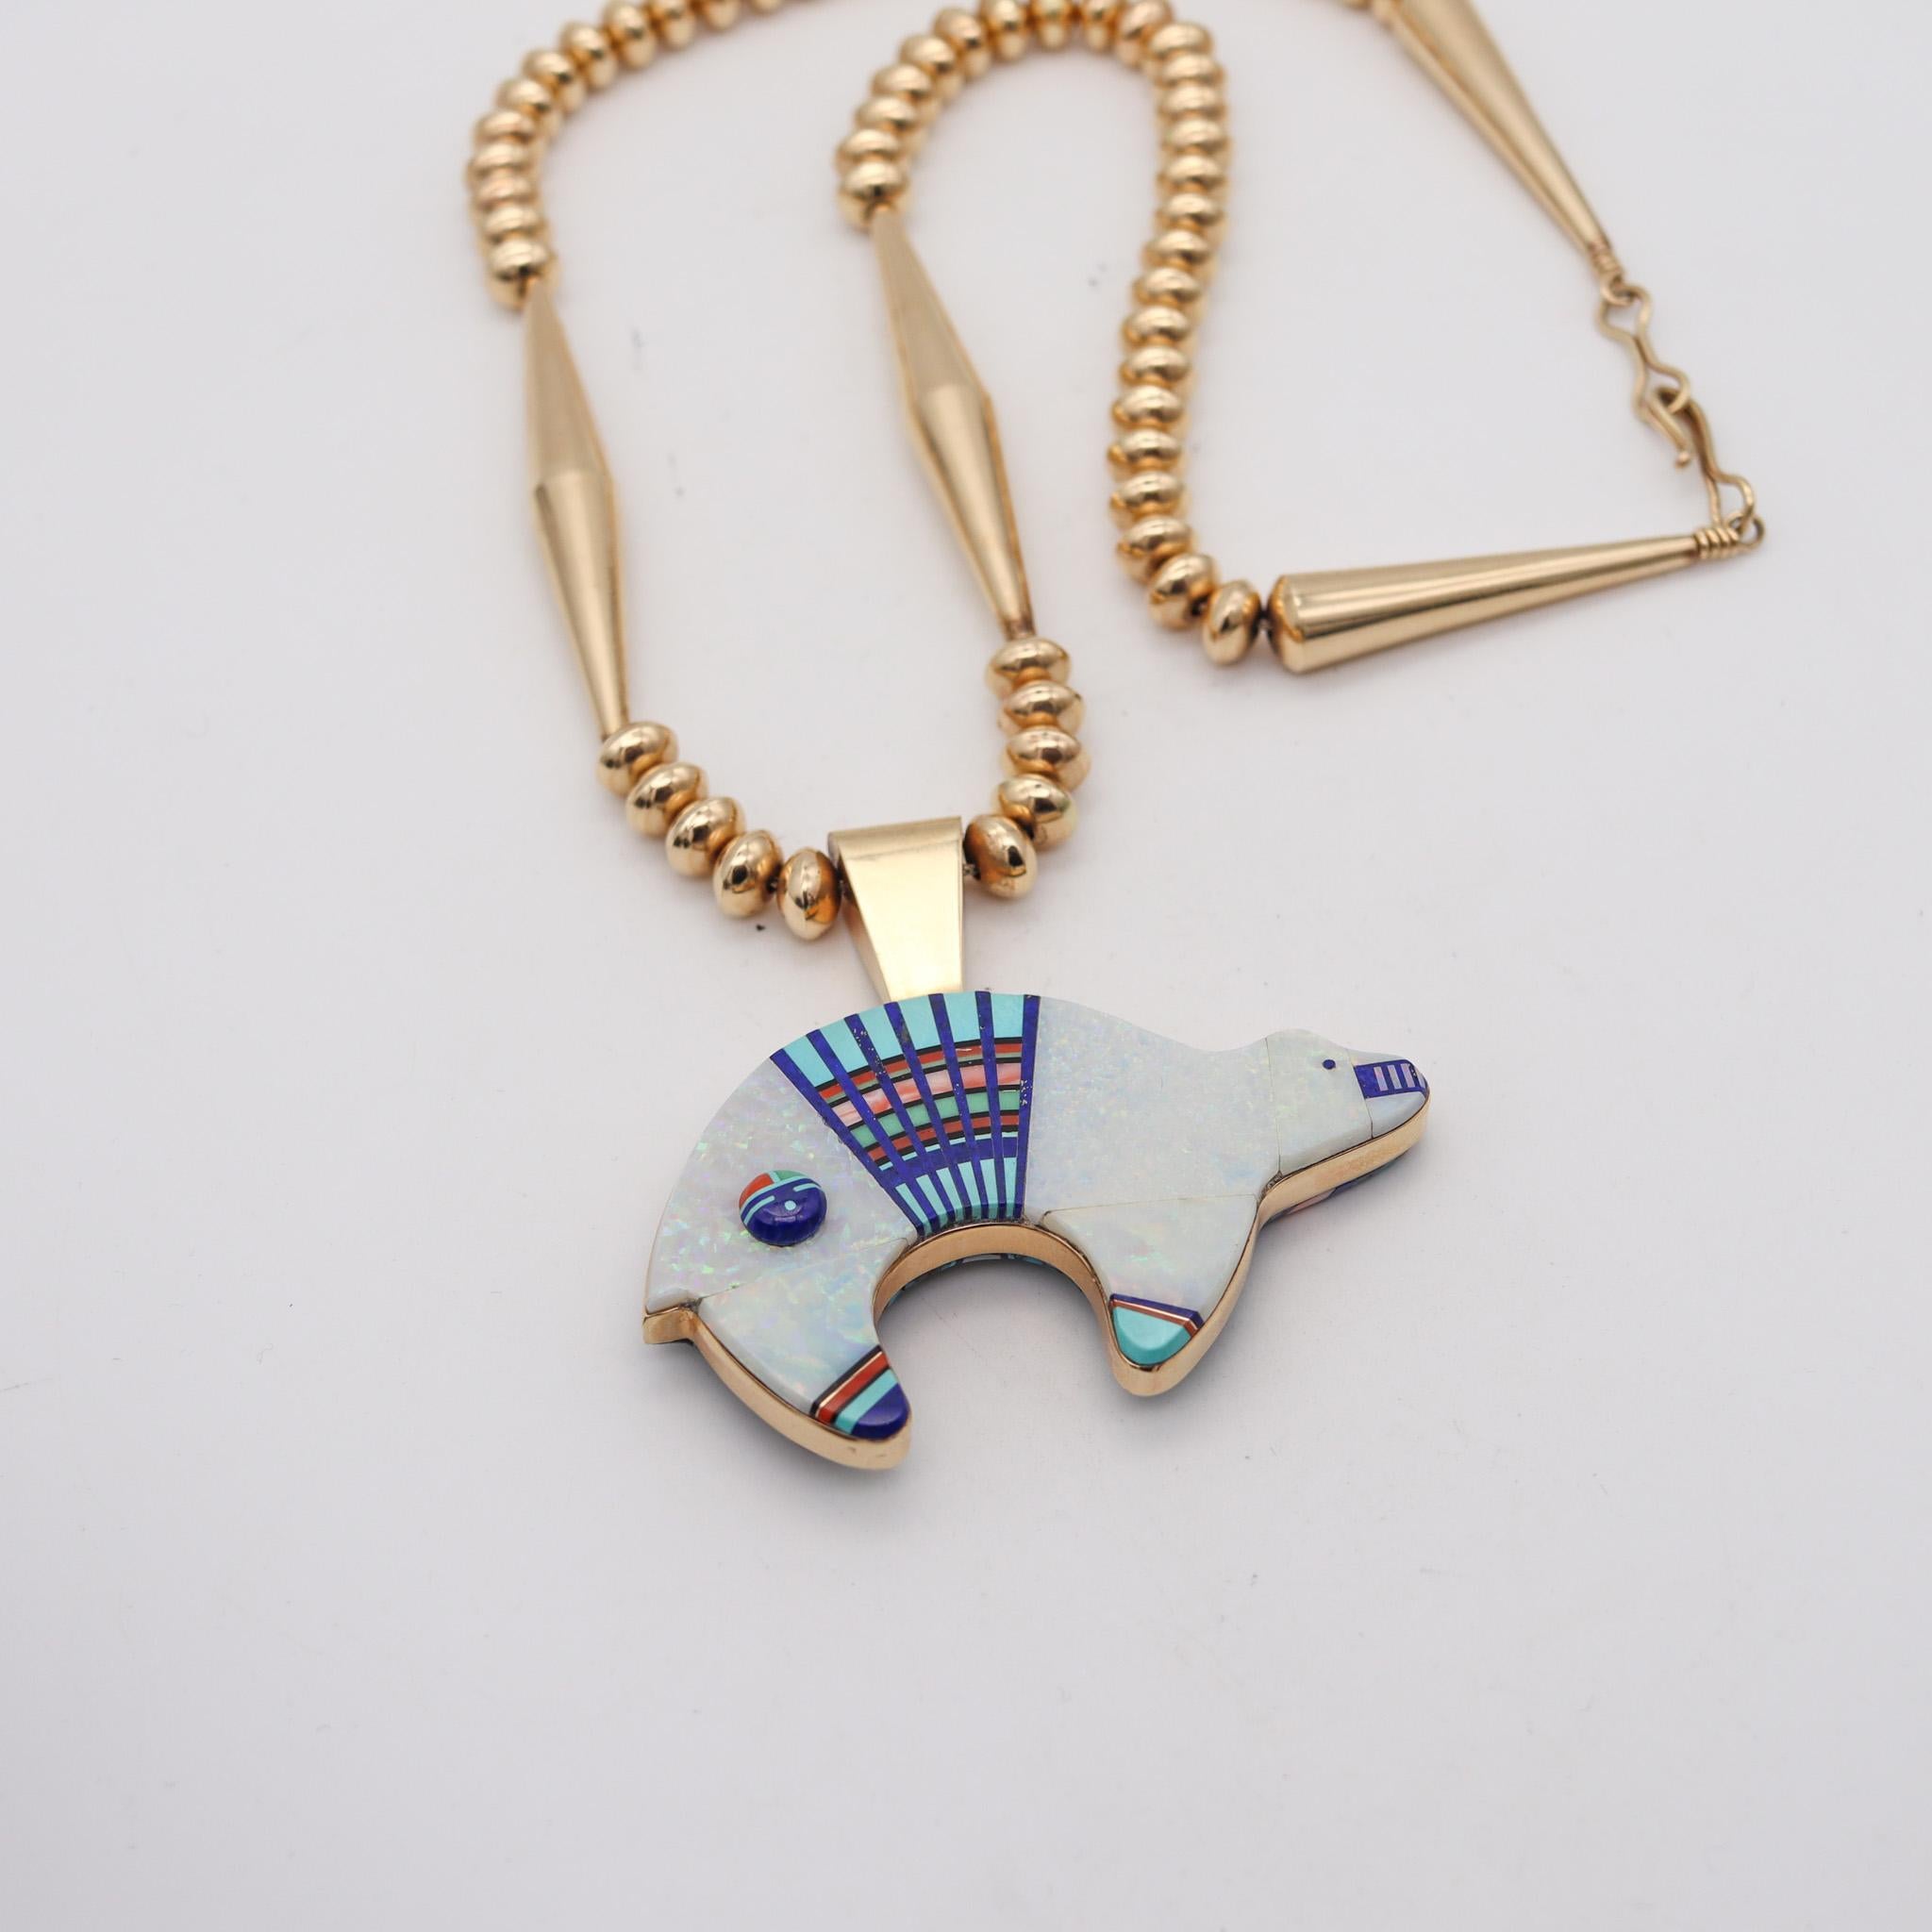 Navajo-Halskette der amerikanischen Ureinwohner, entworfen von Julian Arviso (1959-2011).

Fantastische Halskette und doppelseitiger Anhänger, geschaffen von dem Navajo-Dine Goldschmiedekünstler Julian Arviso im Jahre 1995. Diese fabelhafte